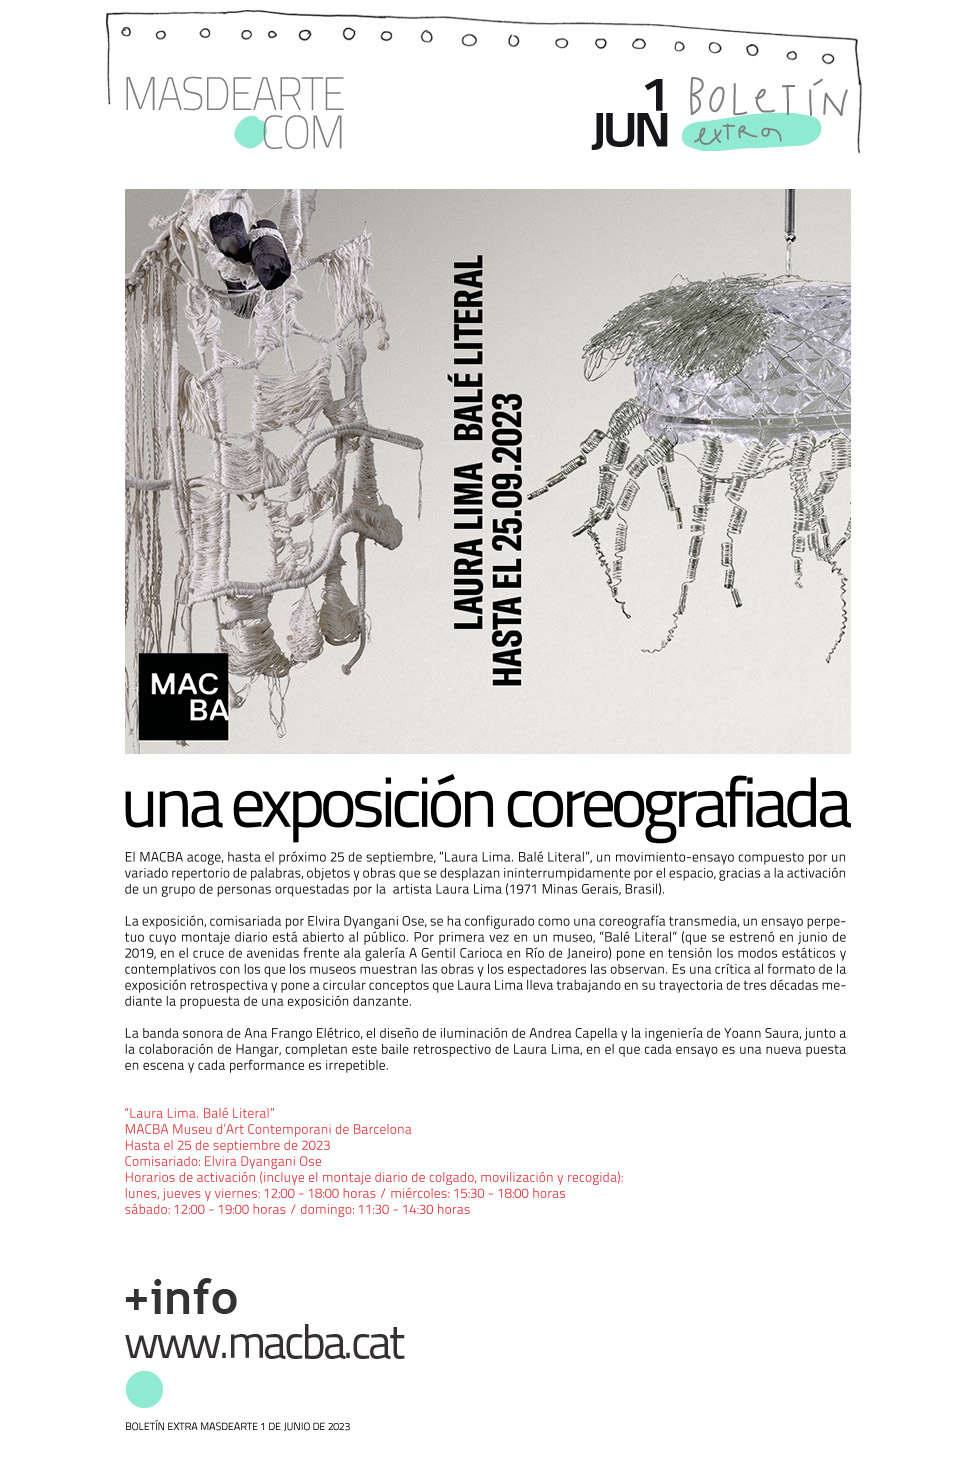 Extra masdearte: el MACBA presenta, por primera vez en un museo, el 'Balé Literal' de Laura Lima